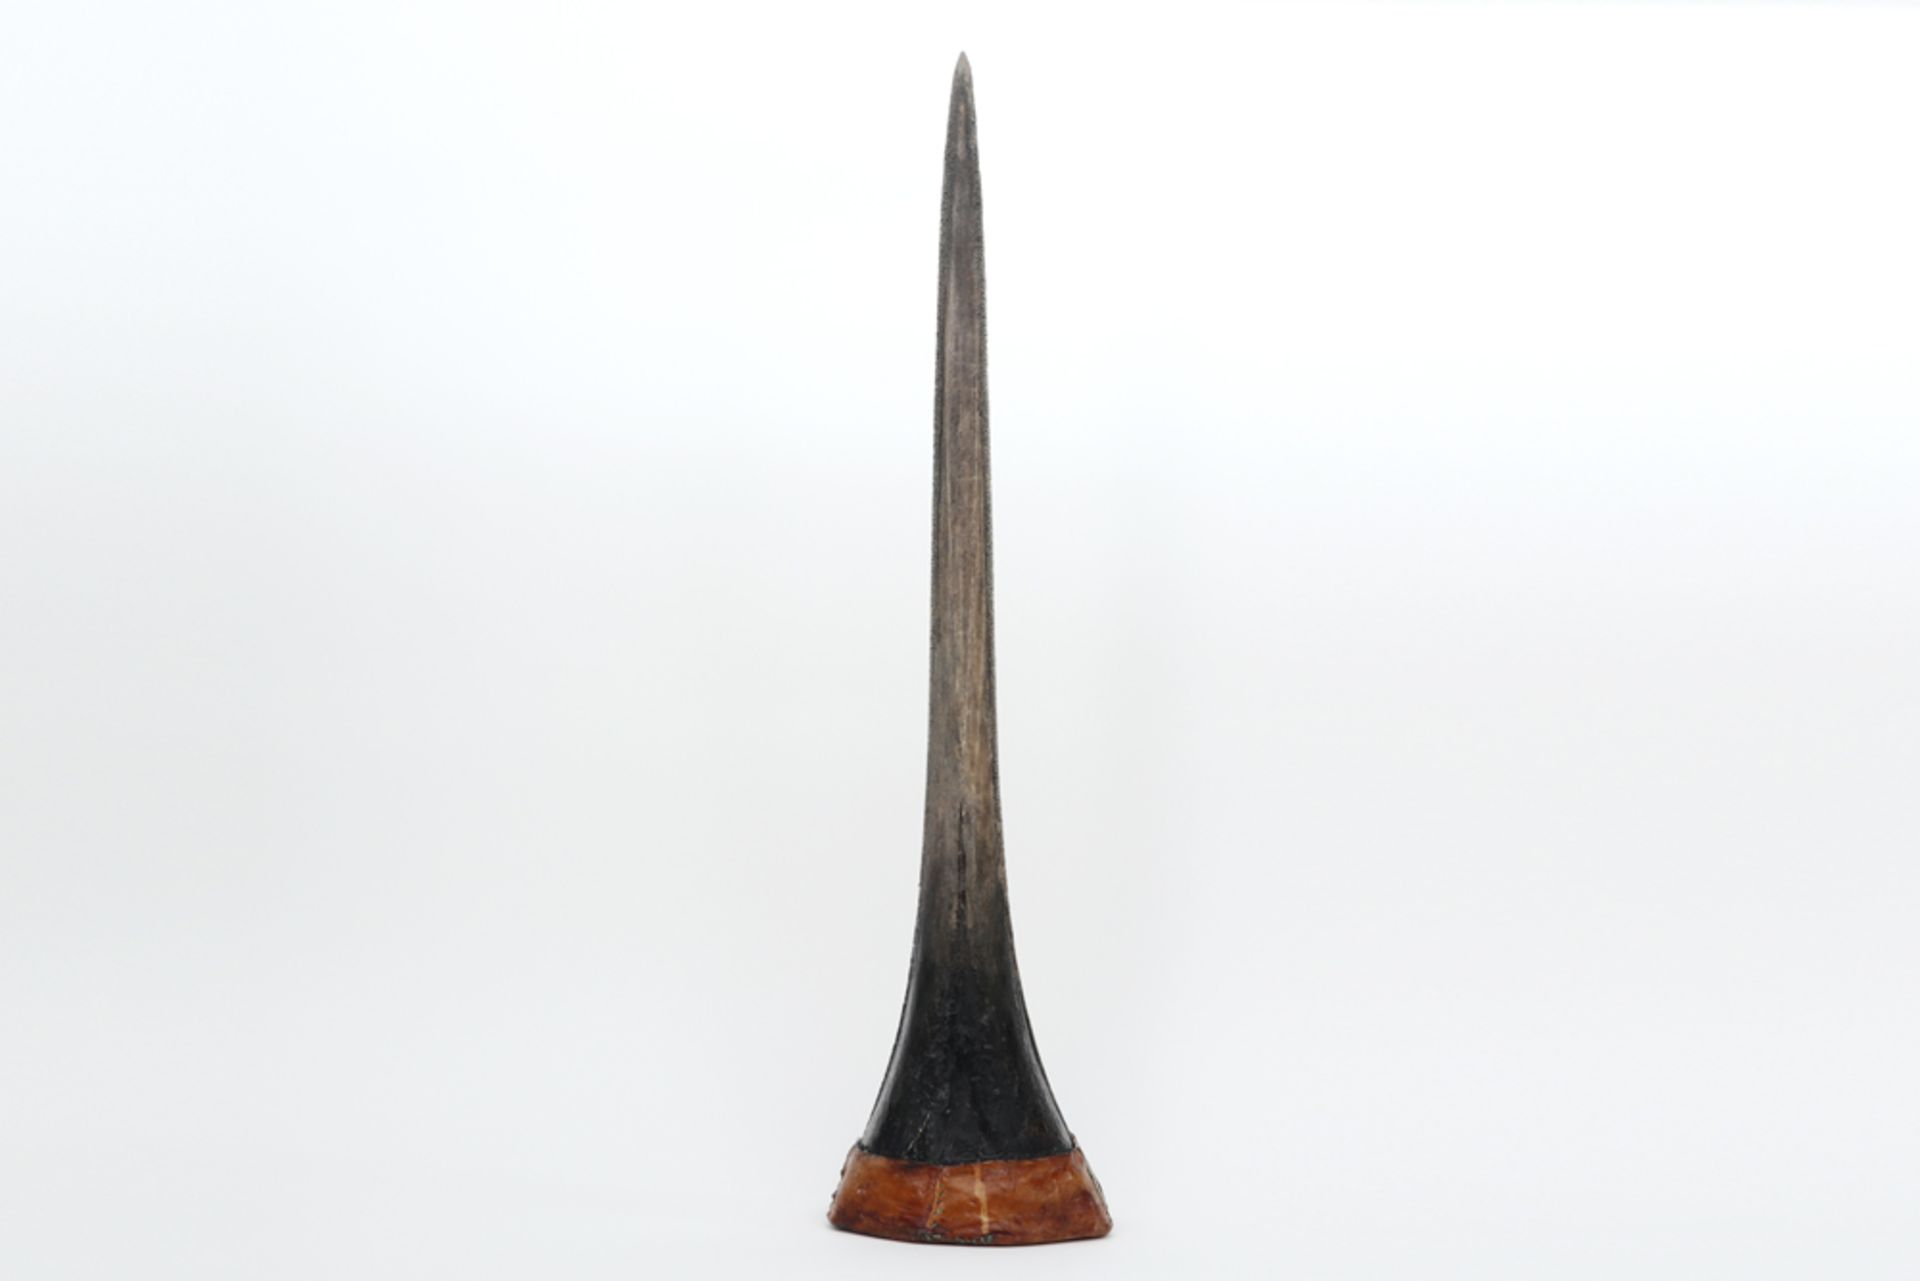 big swordfish tooth of a Xiphias Gladius || Grote zwaardvistand van een Xiphias Gladius - 78 x 20 cm